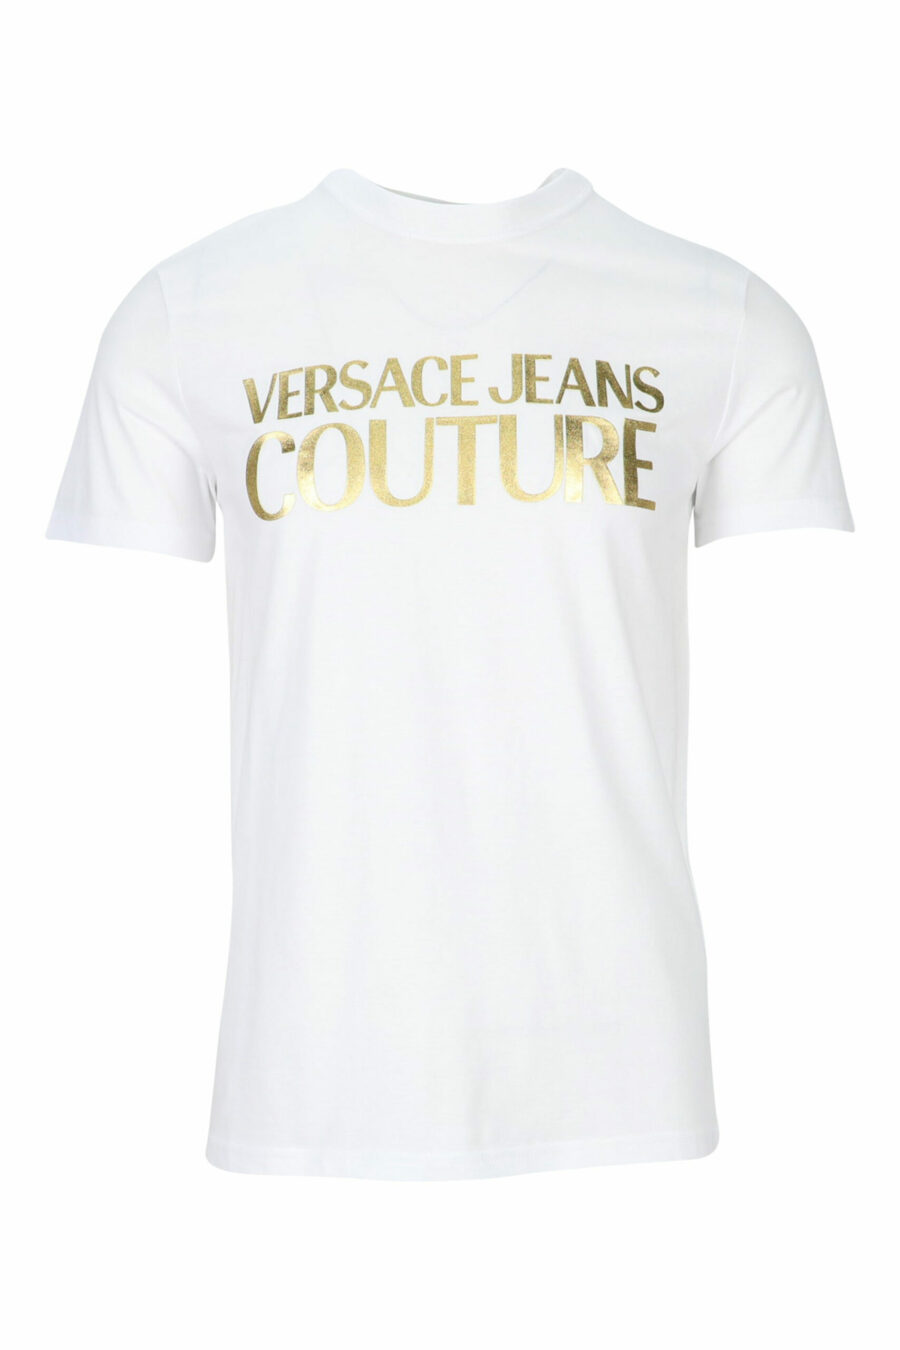 T-shirt blanc avec maxilogue classique en or brillant - 8052019456738 scaled